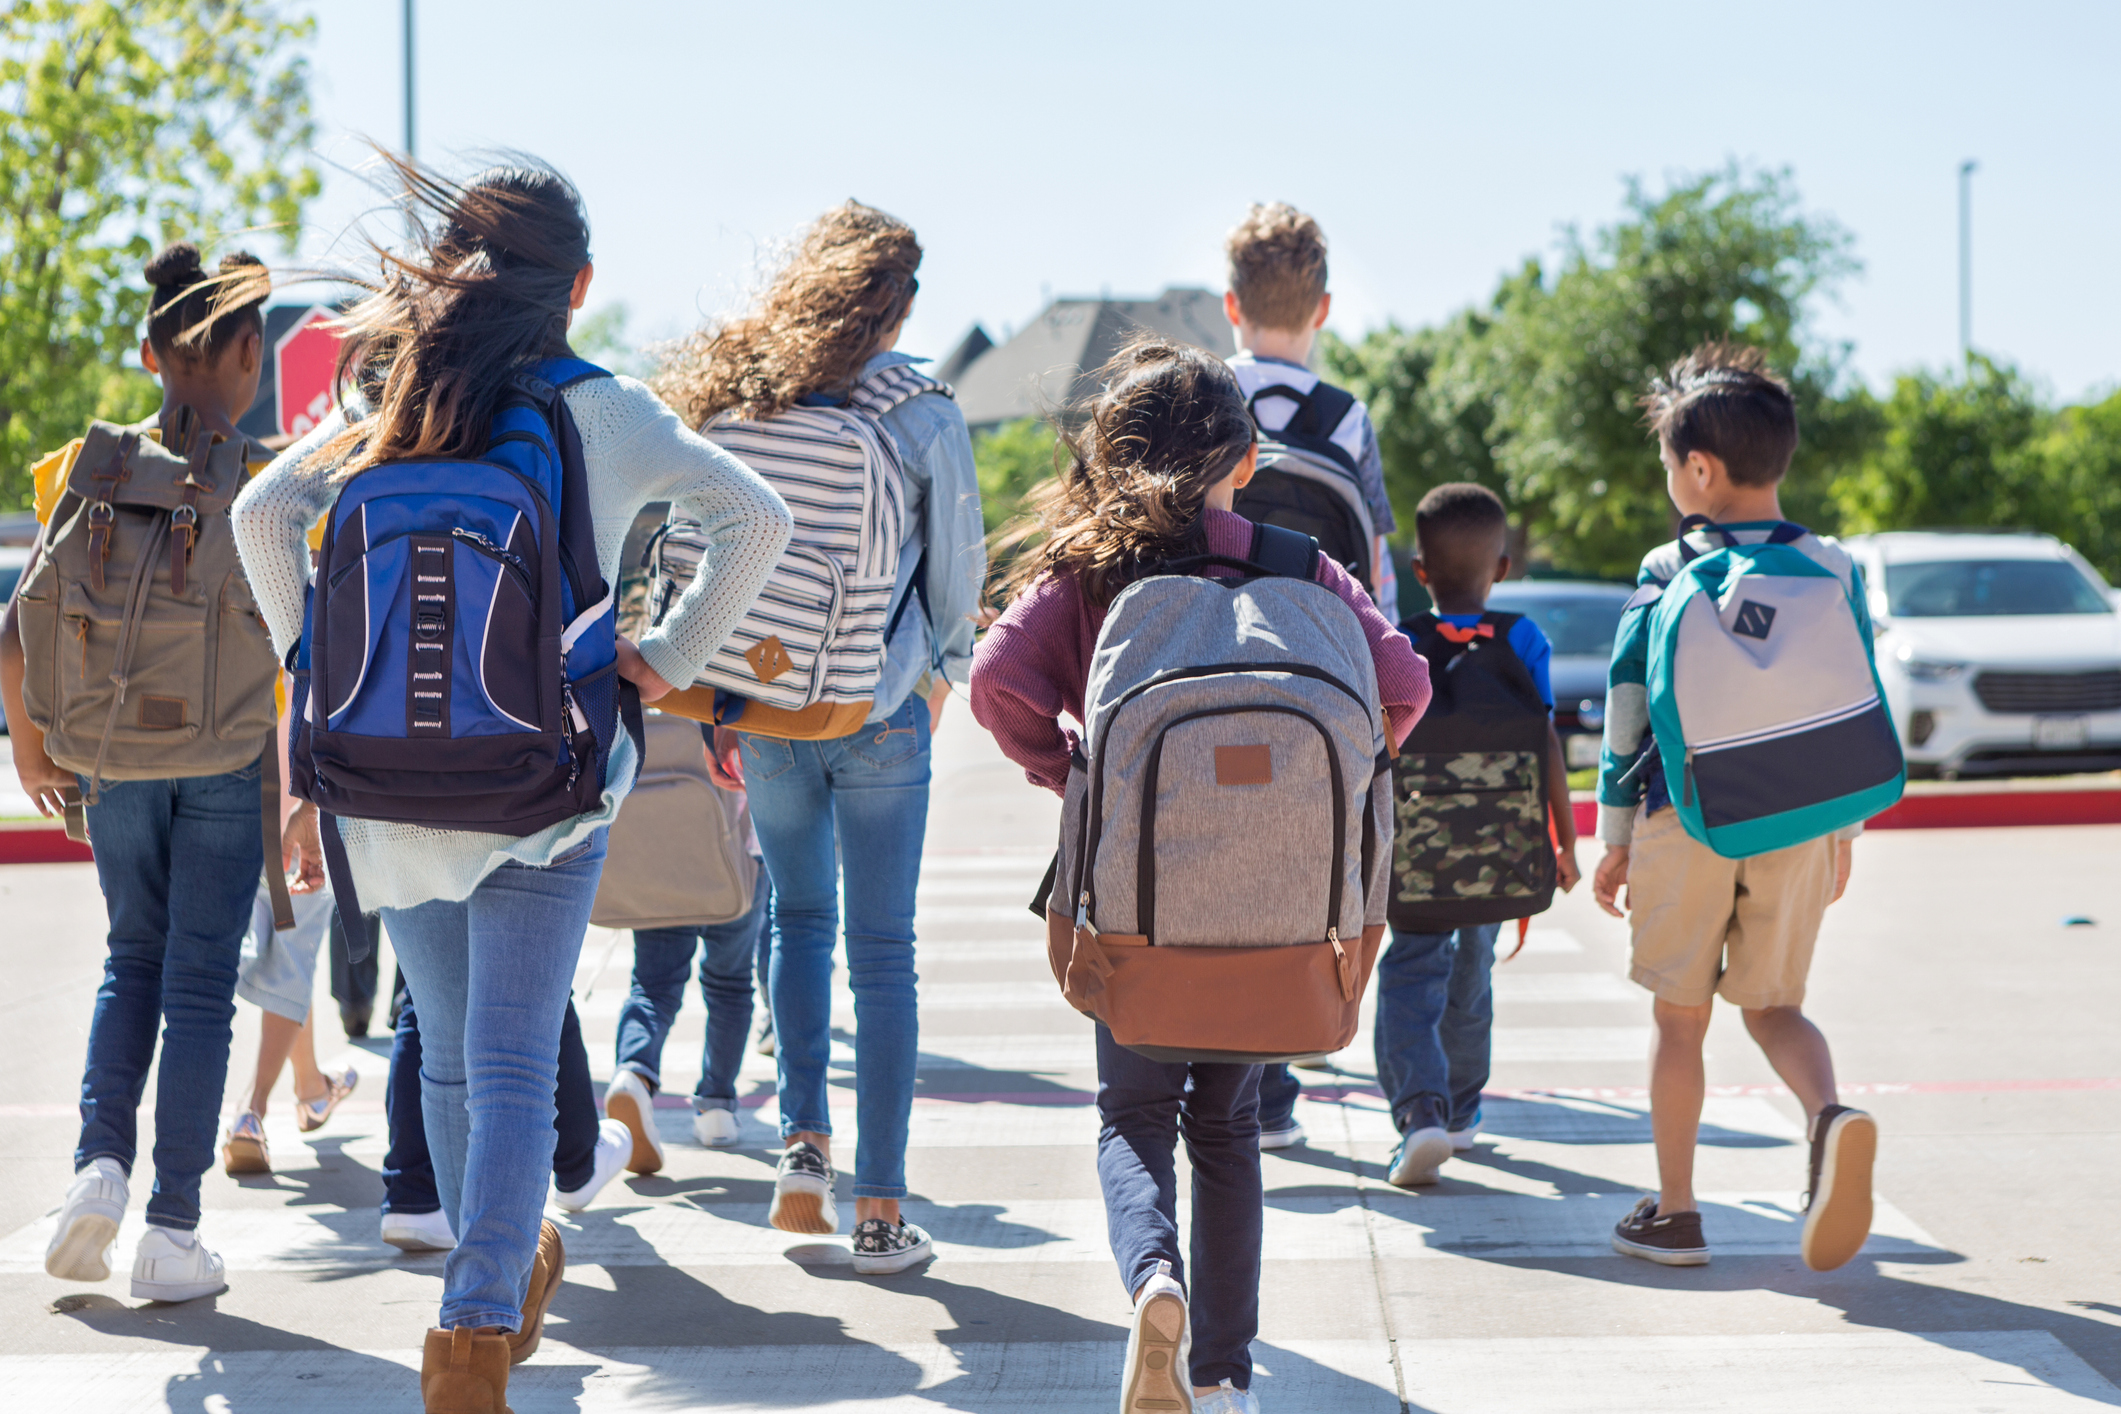 Expertos advierten sobre los problemas posturales generados por el excesivo peso en las mochilas escolares (Getty Images)